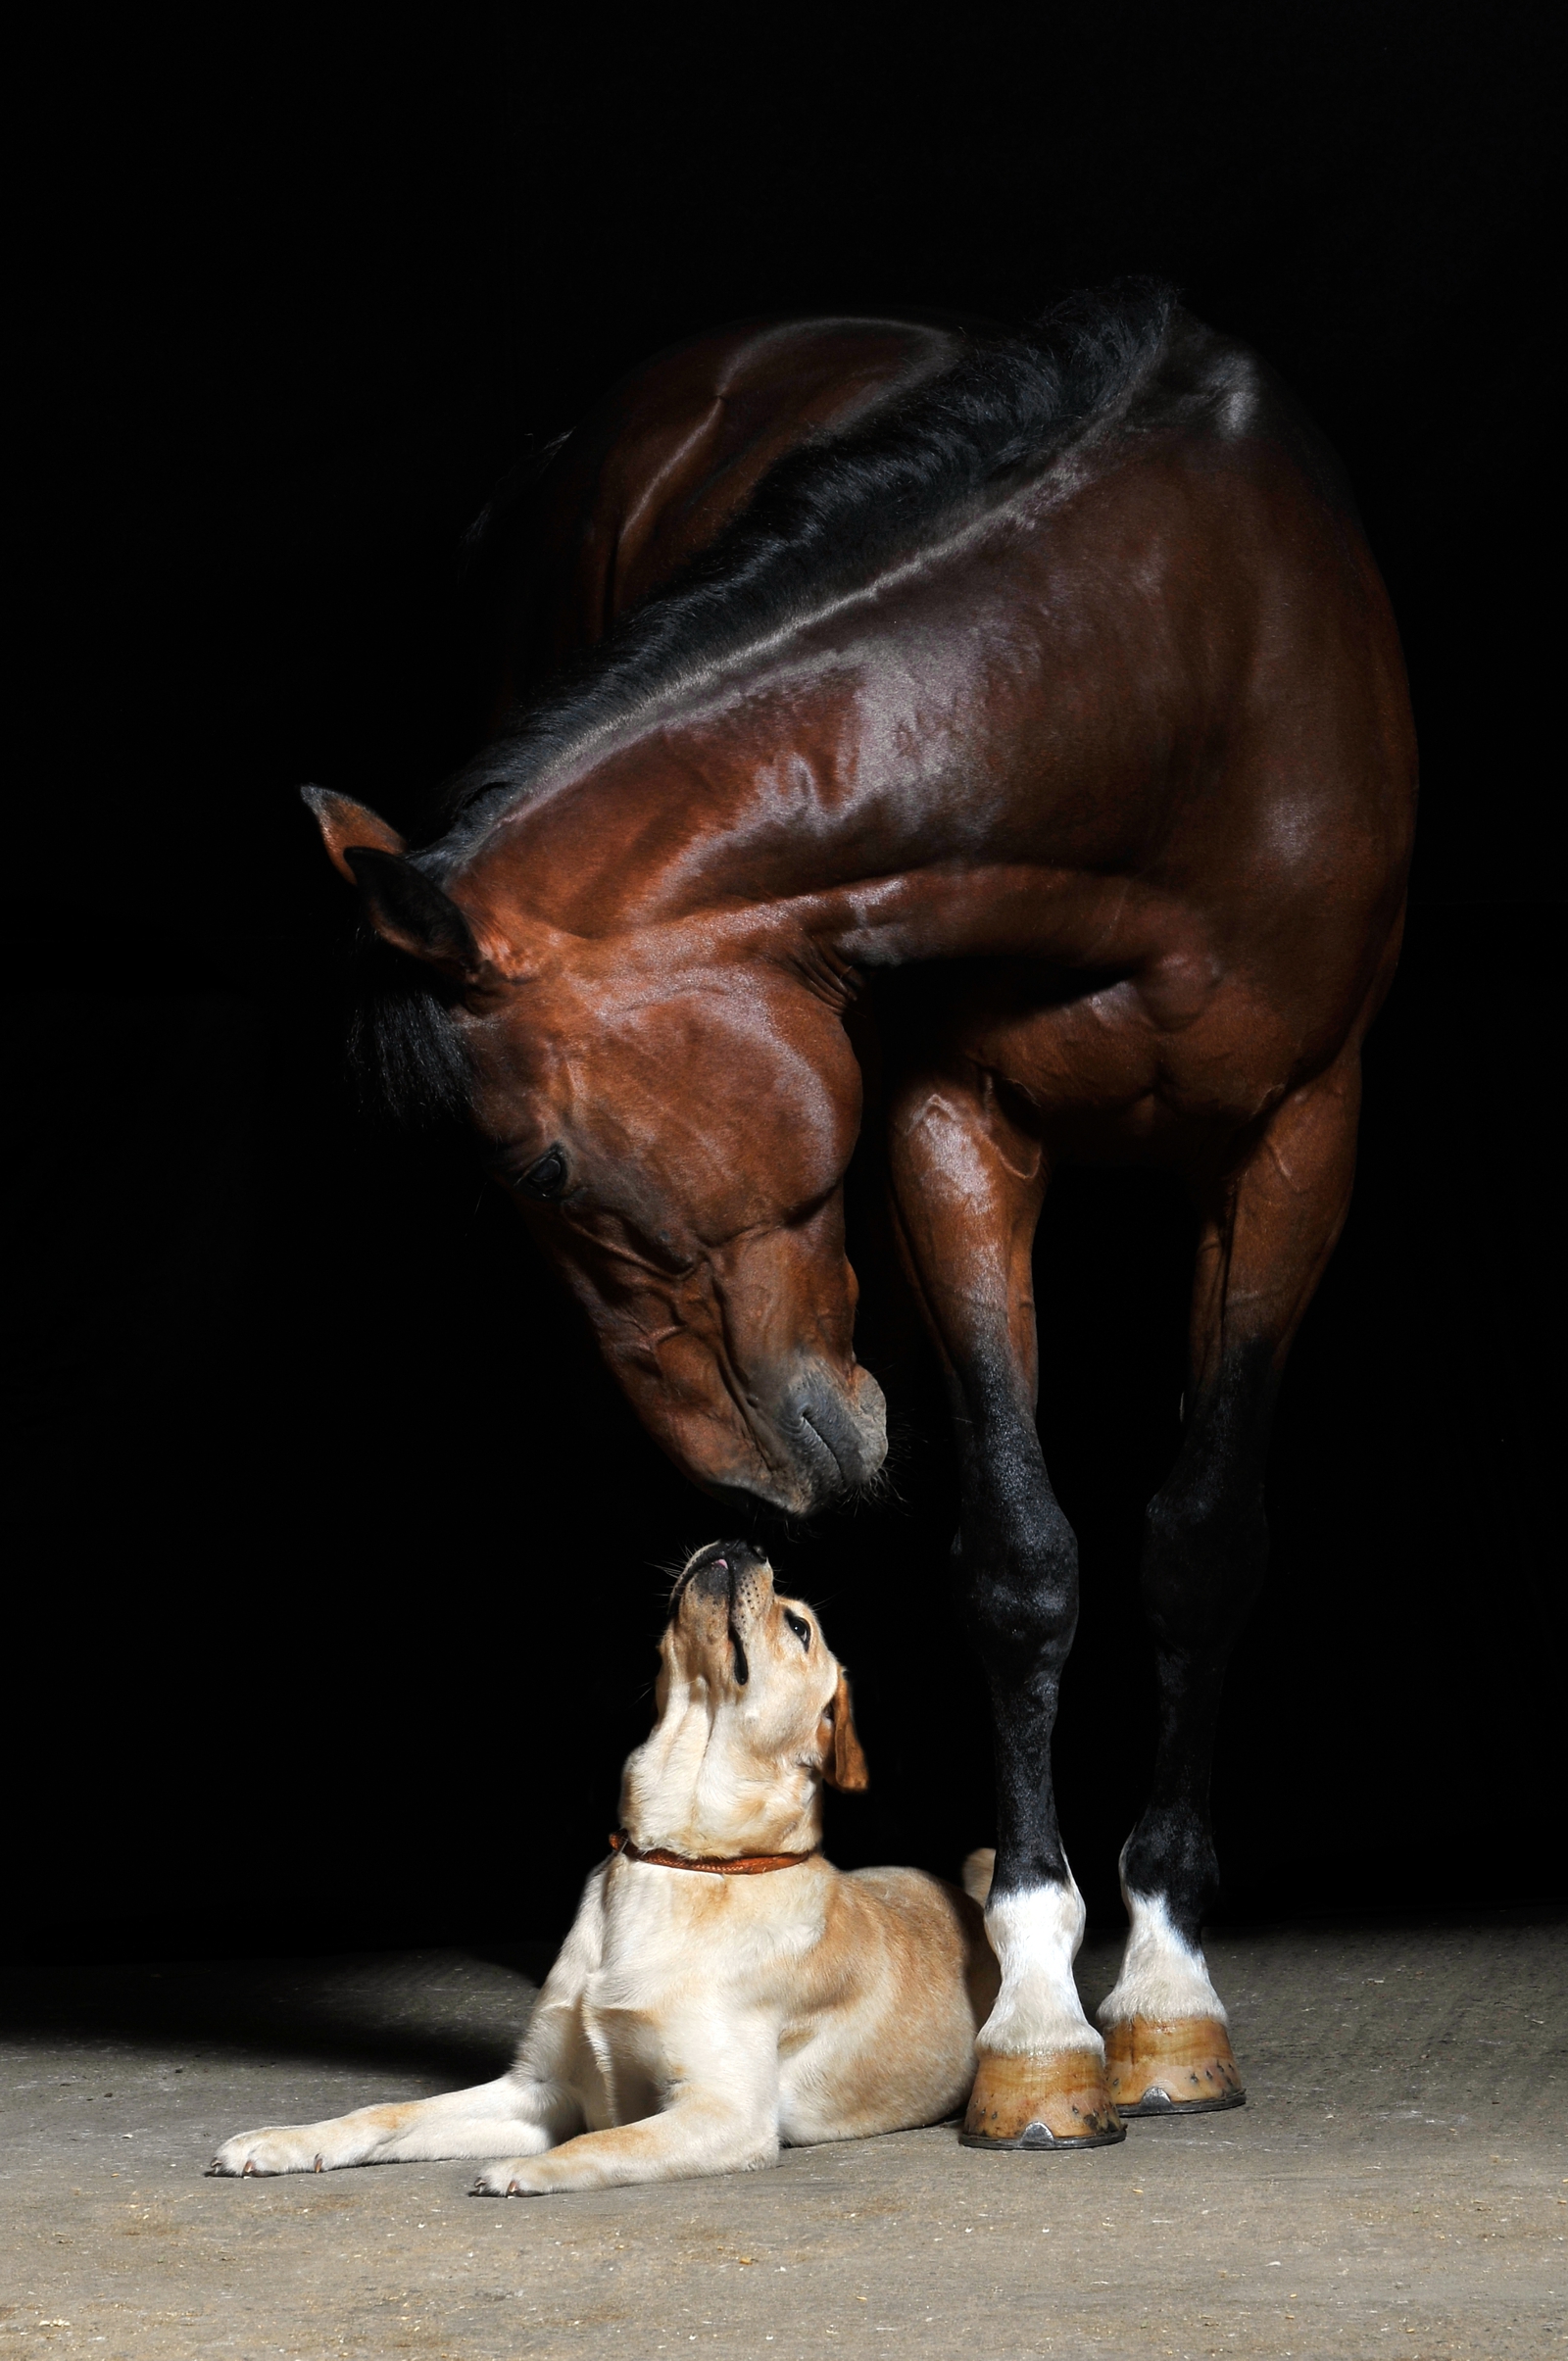 Leinwand Bild edel  Tiere Pferd & Hund Freunde